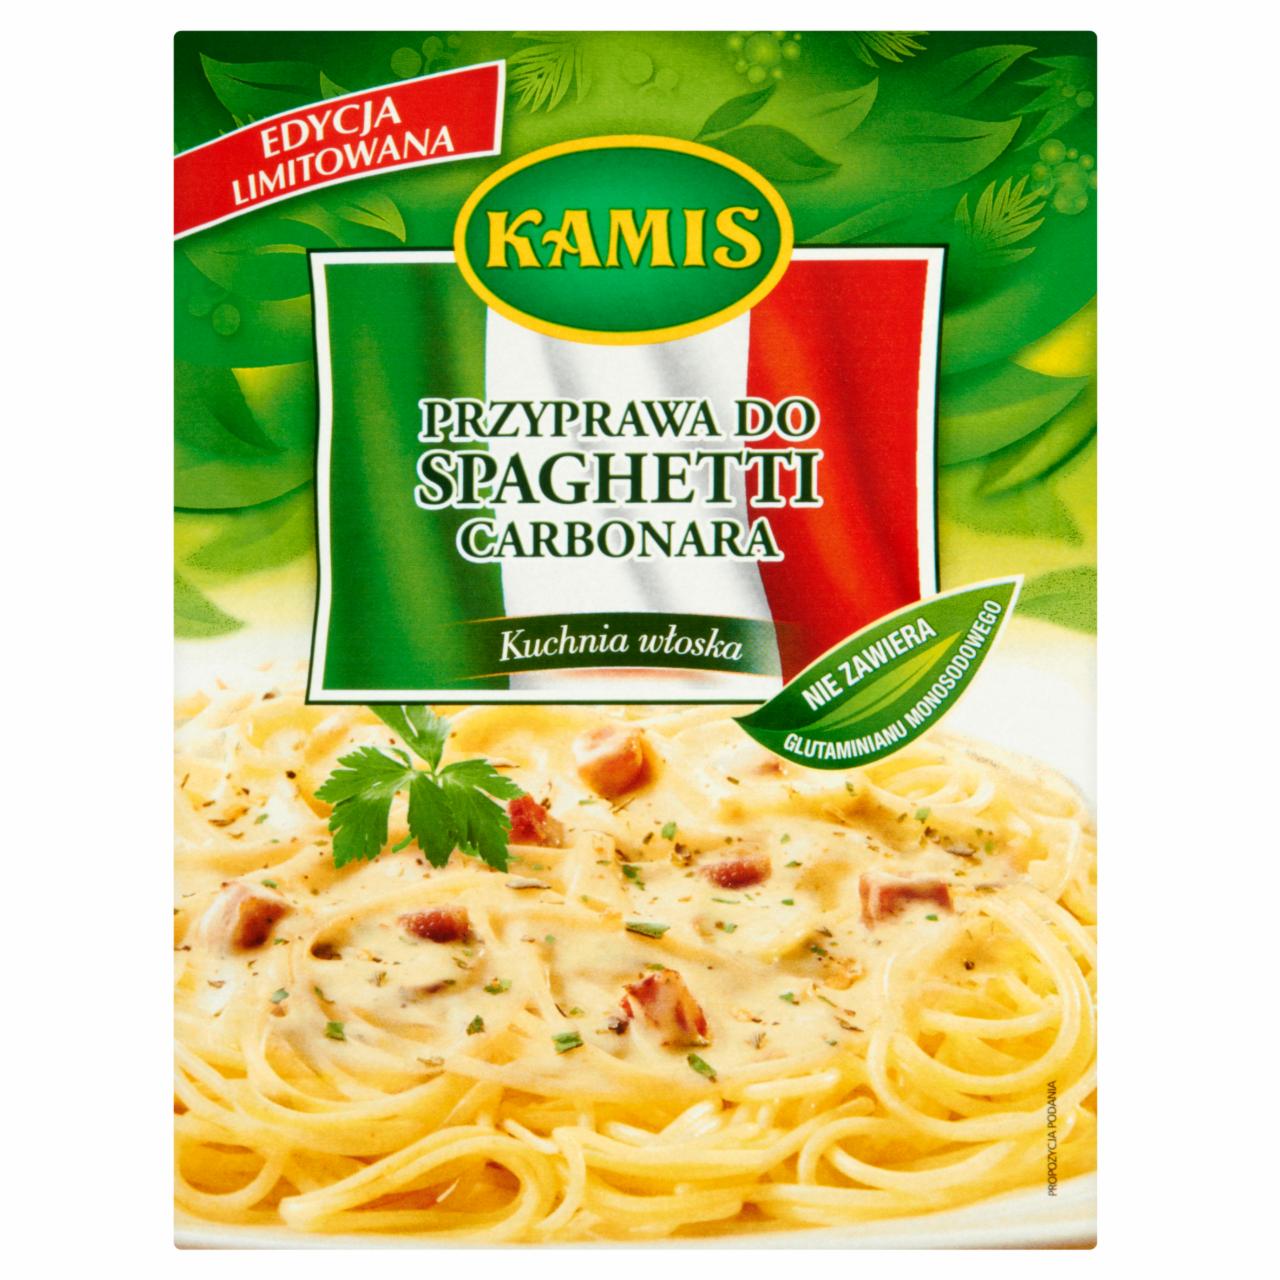 Zdjęcia - Kamis Kuchnia włoska Przyprawa do Spaghetti Carbonara 15 g